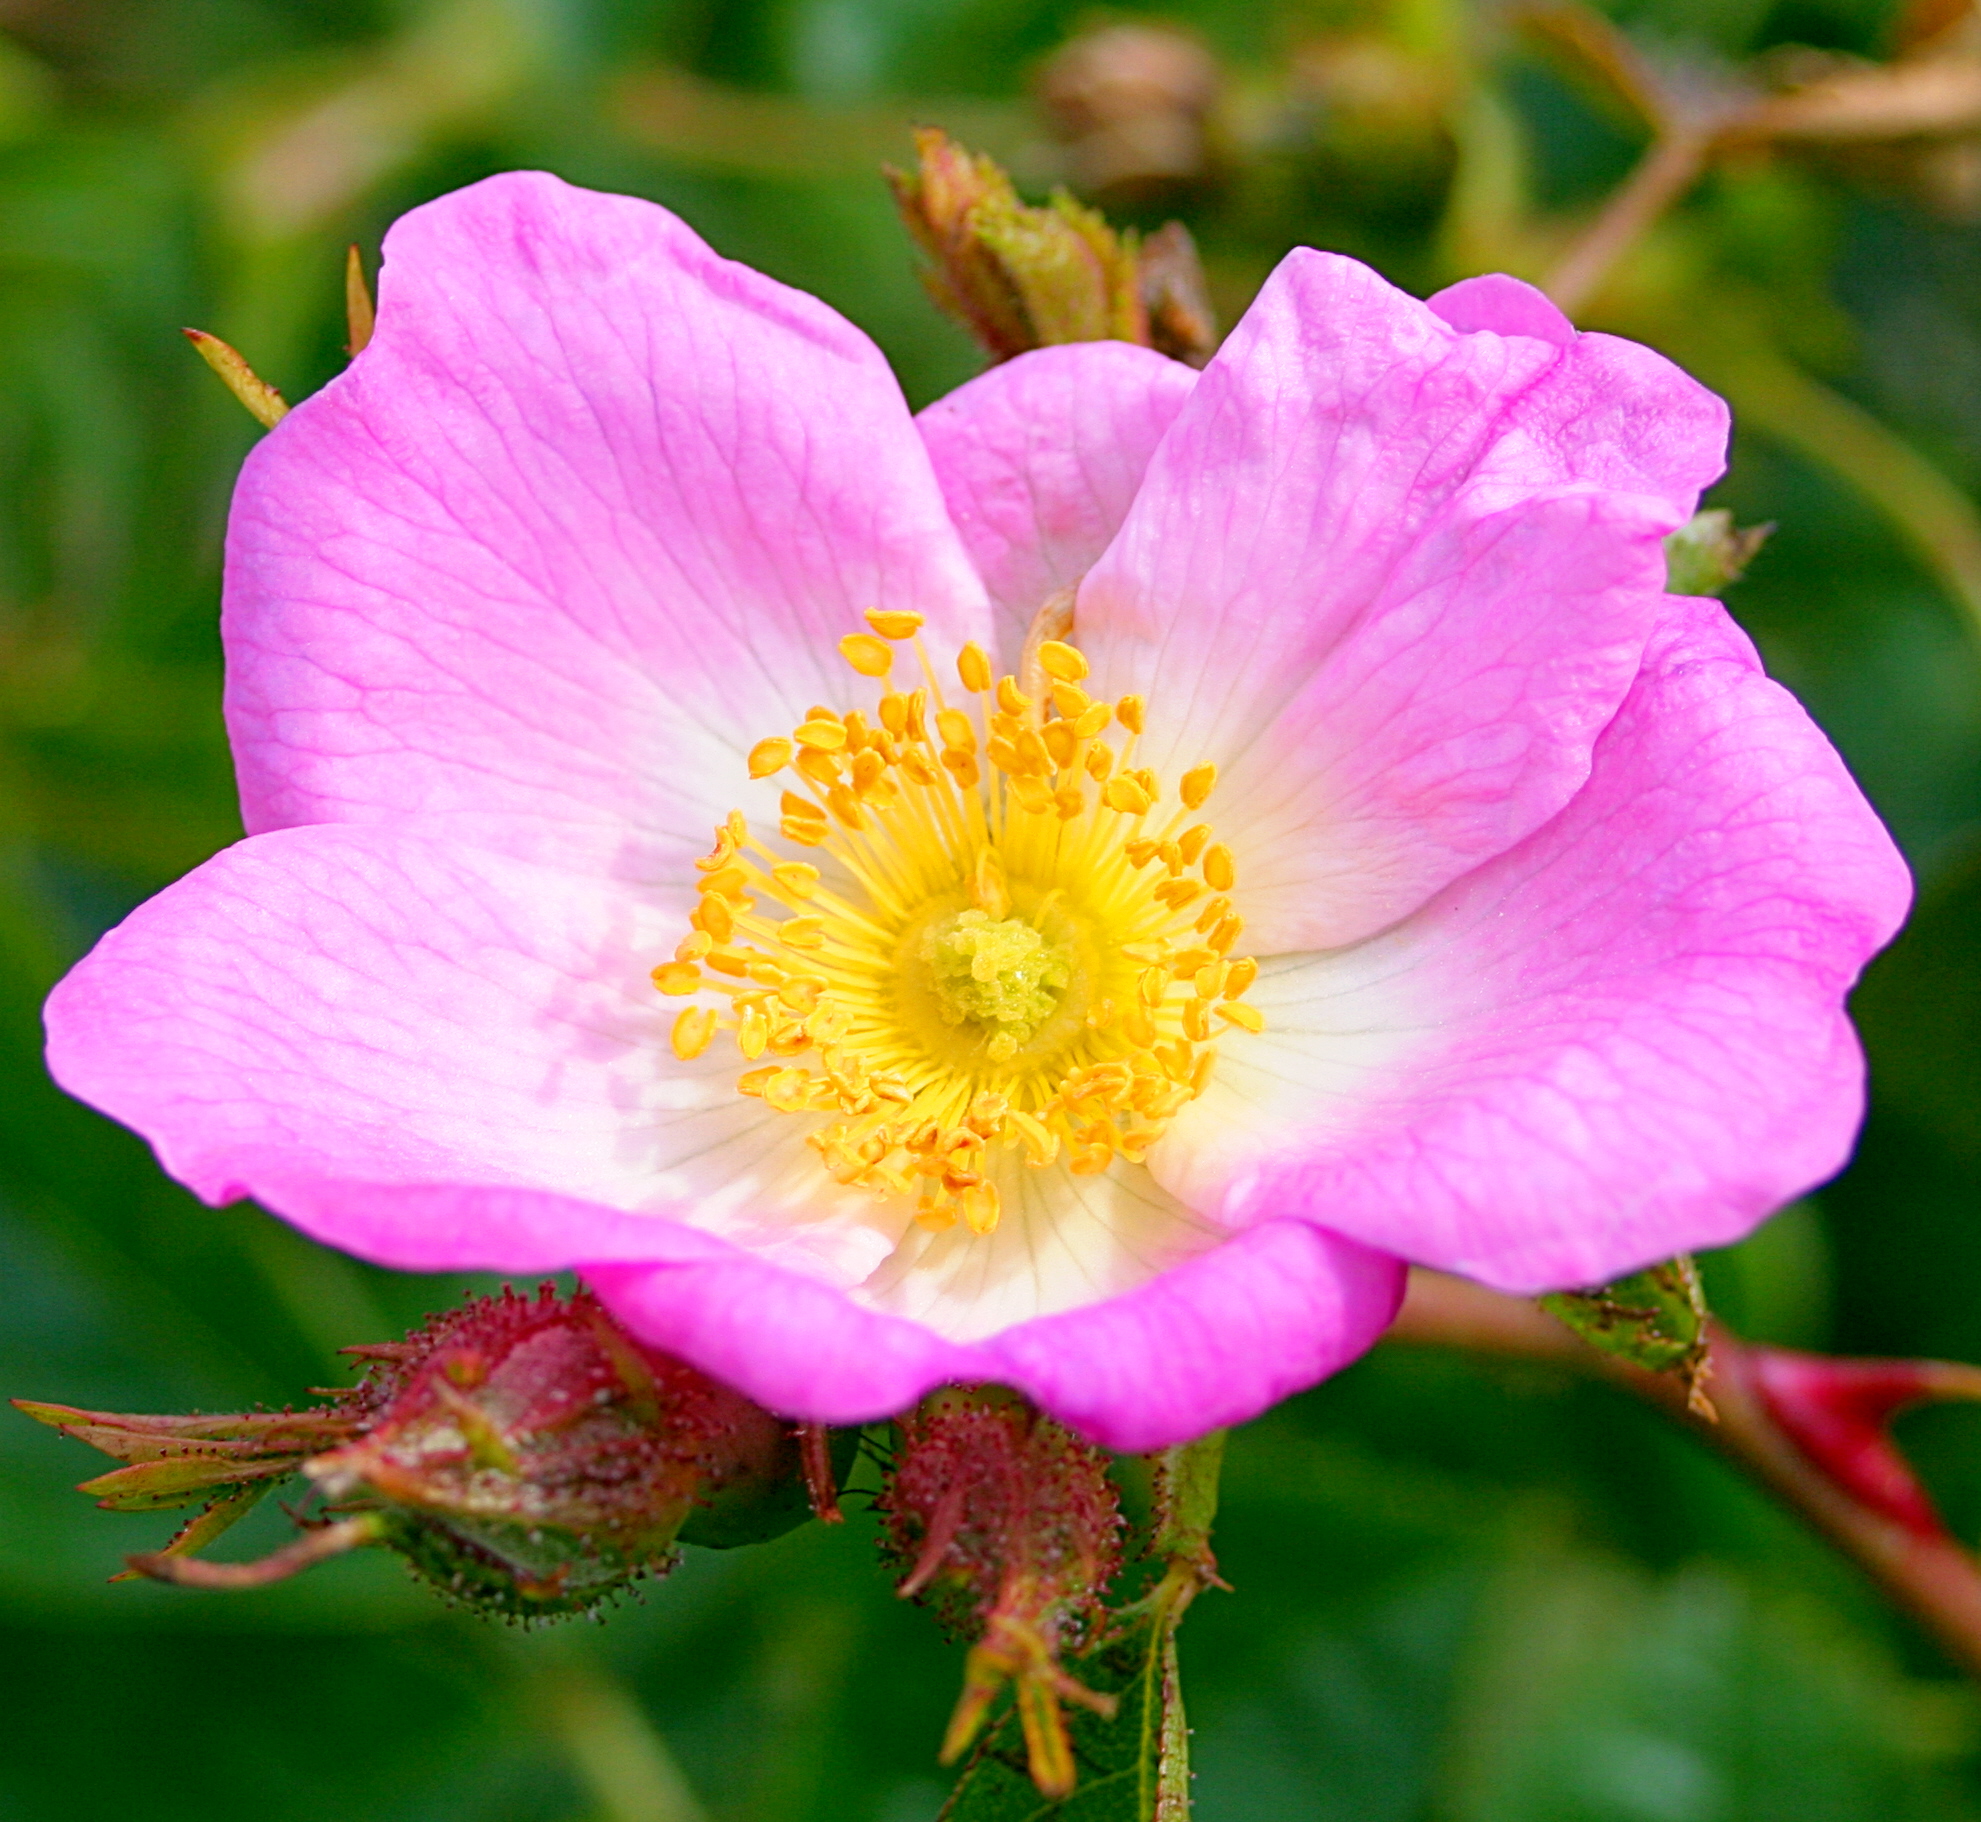 a single pink flower growing in a field